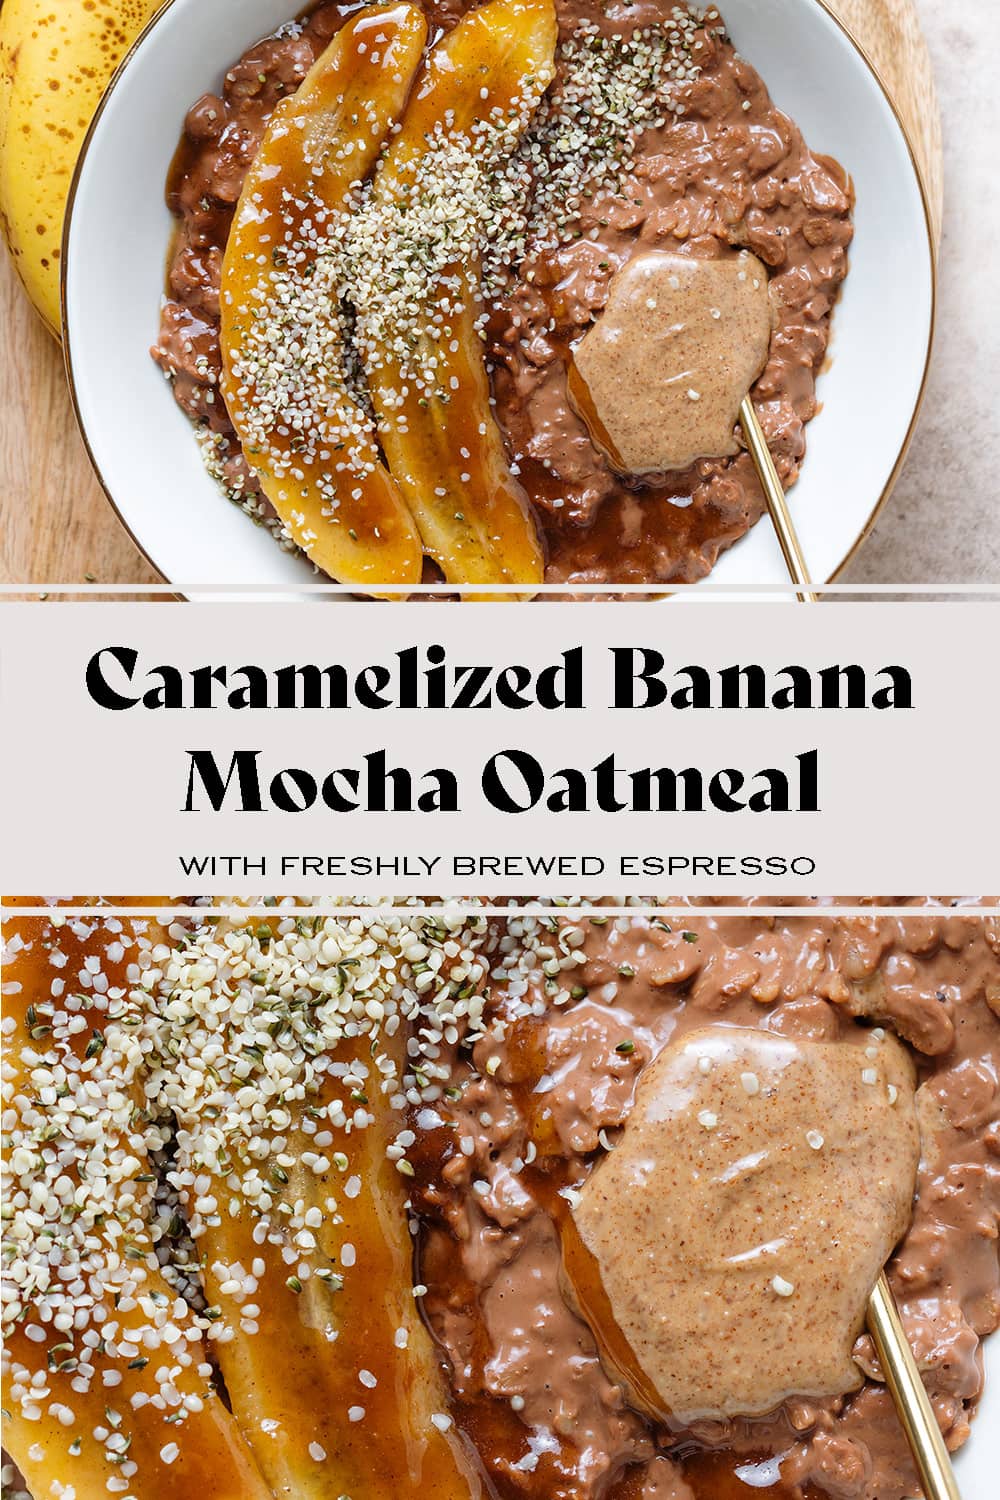 Mocha Oatmeal with Caramelized Banana